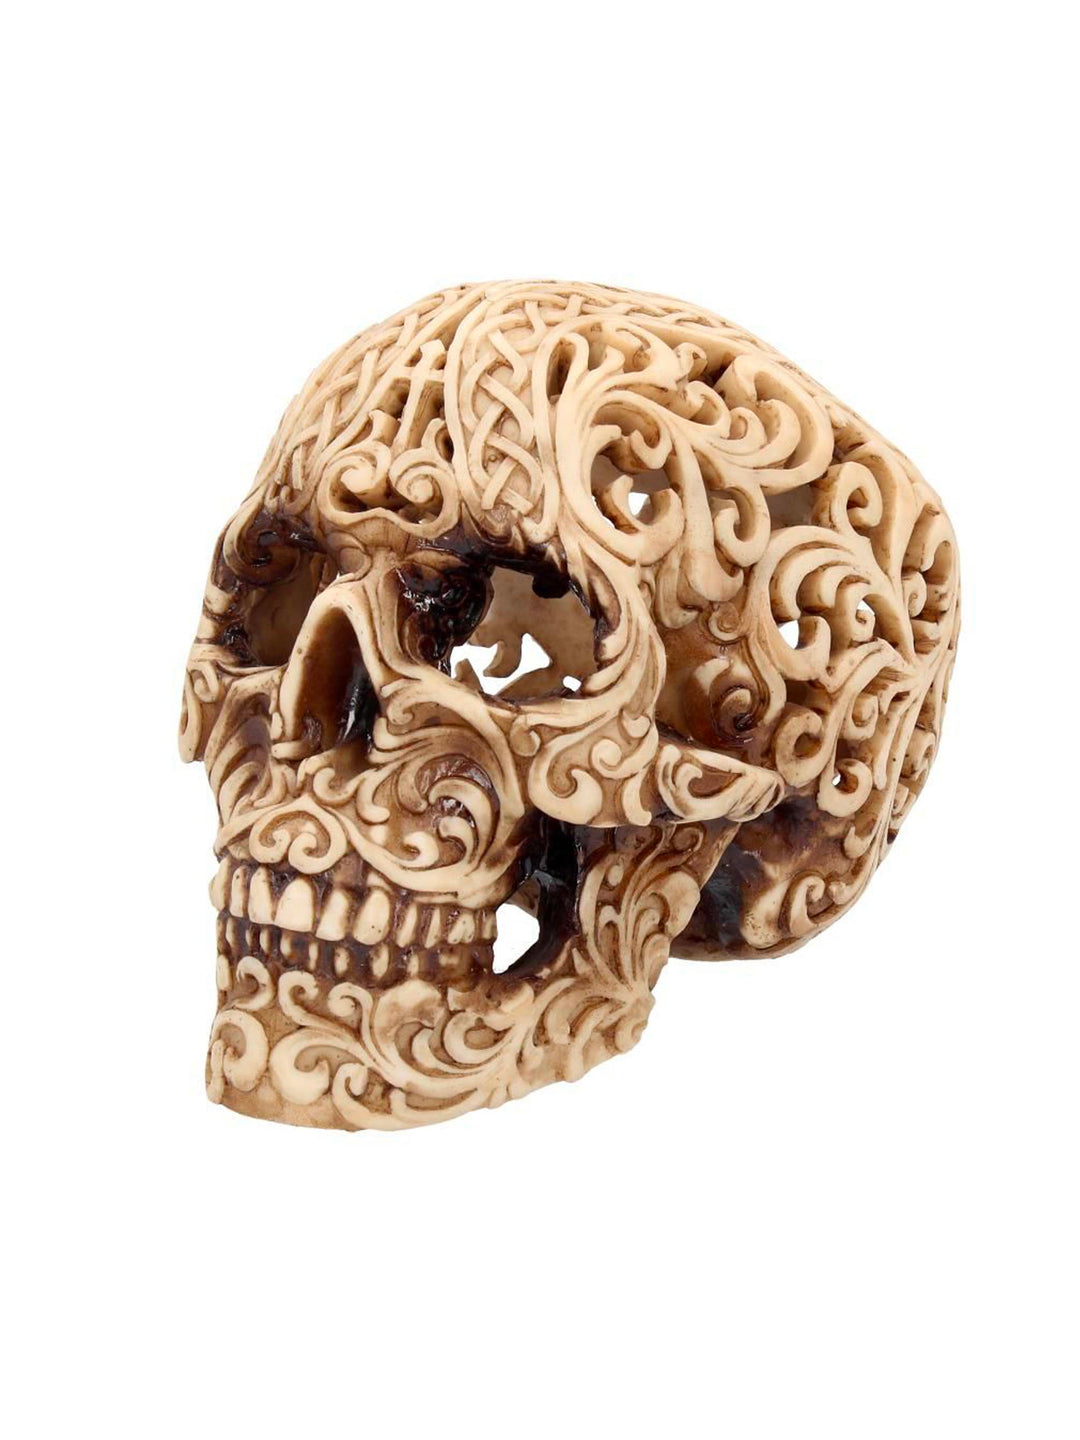 Human Skull, Celtic Decadence, Gothic Skull